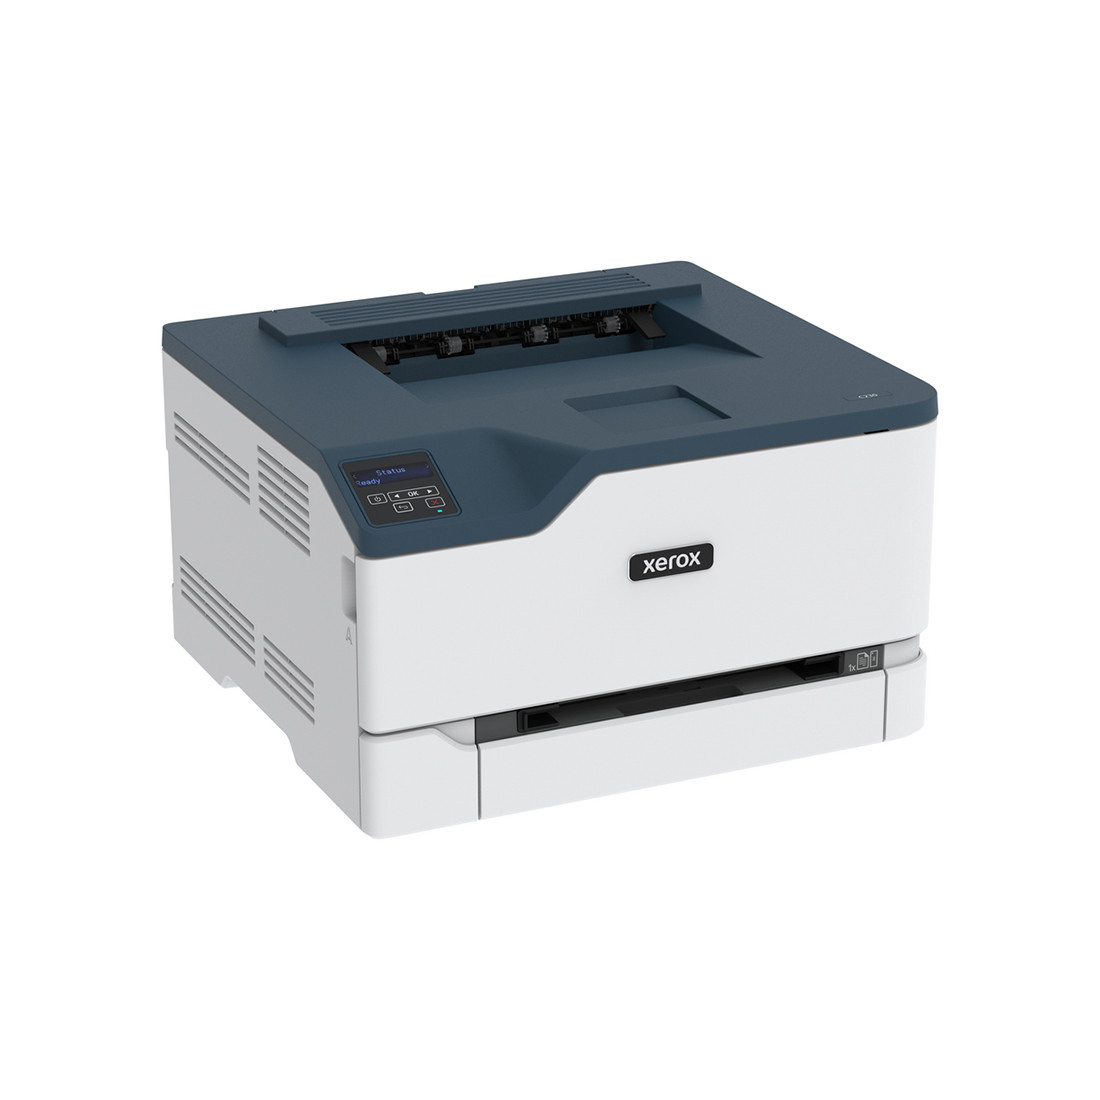 Цветной принтер  Xerox  C230DNI  A4  Лазерный  24/22 стр/мин  Нагрузка (max) 30K в месяц  250+1 стр. - емкость